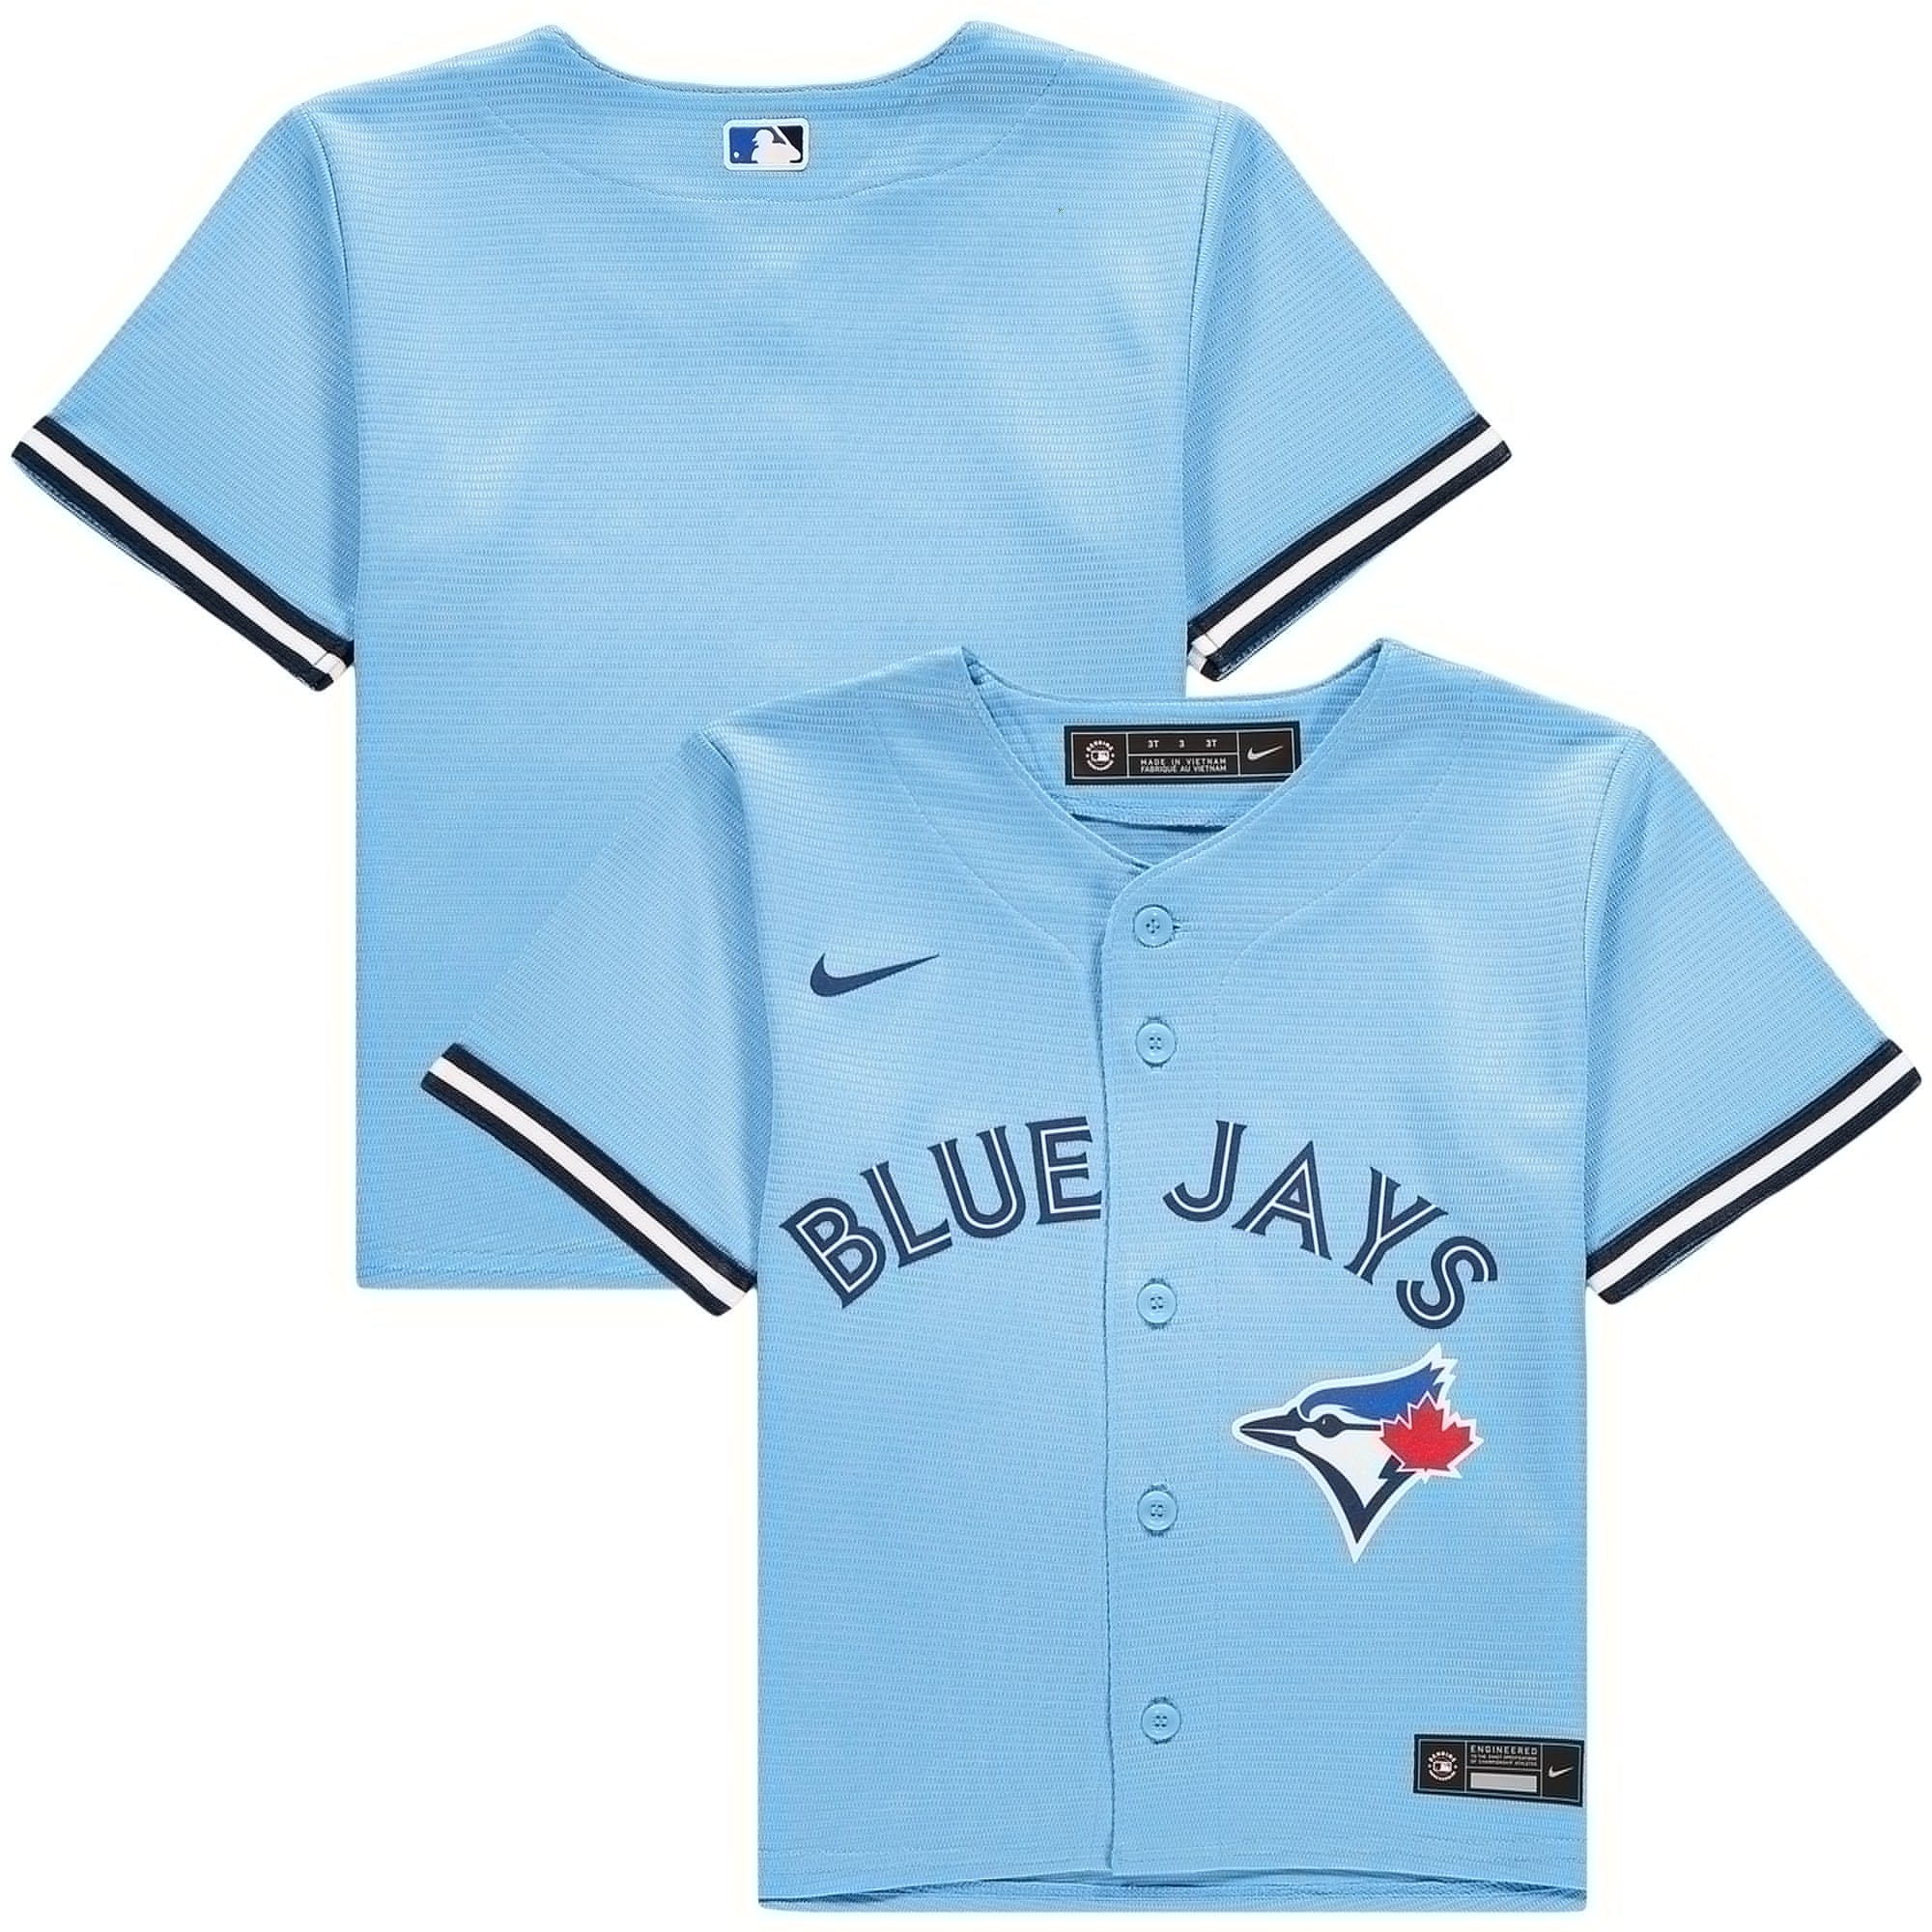 blue jays light blue jersey